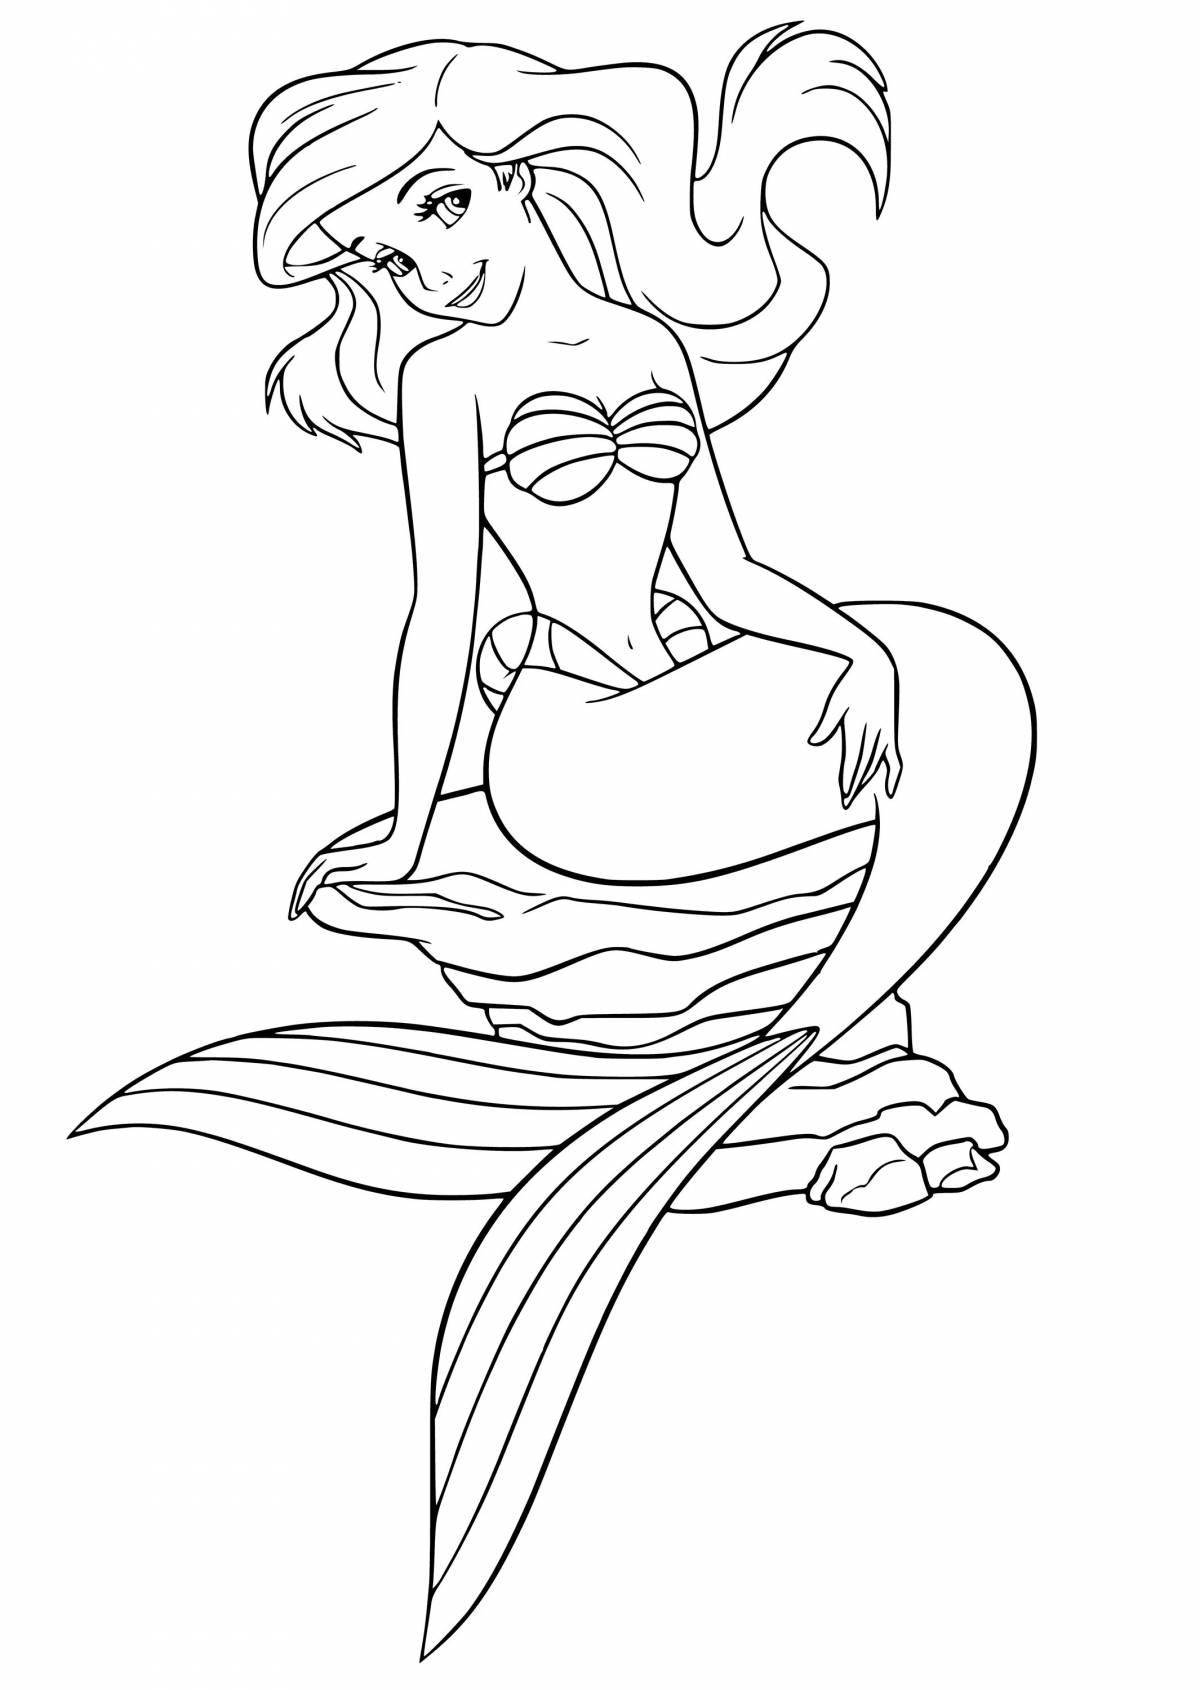 Disney little mermaid coloring book